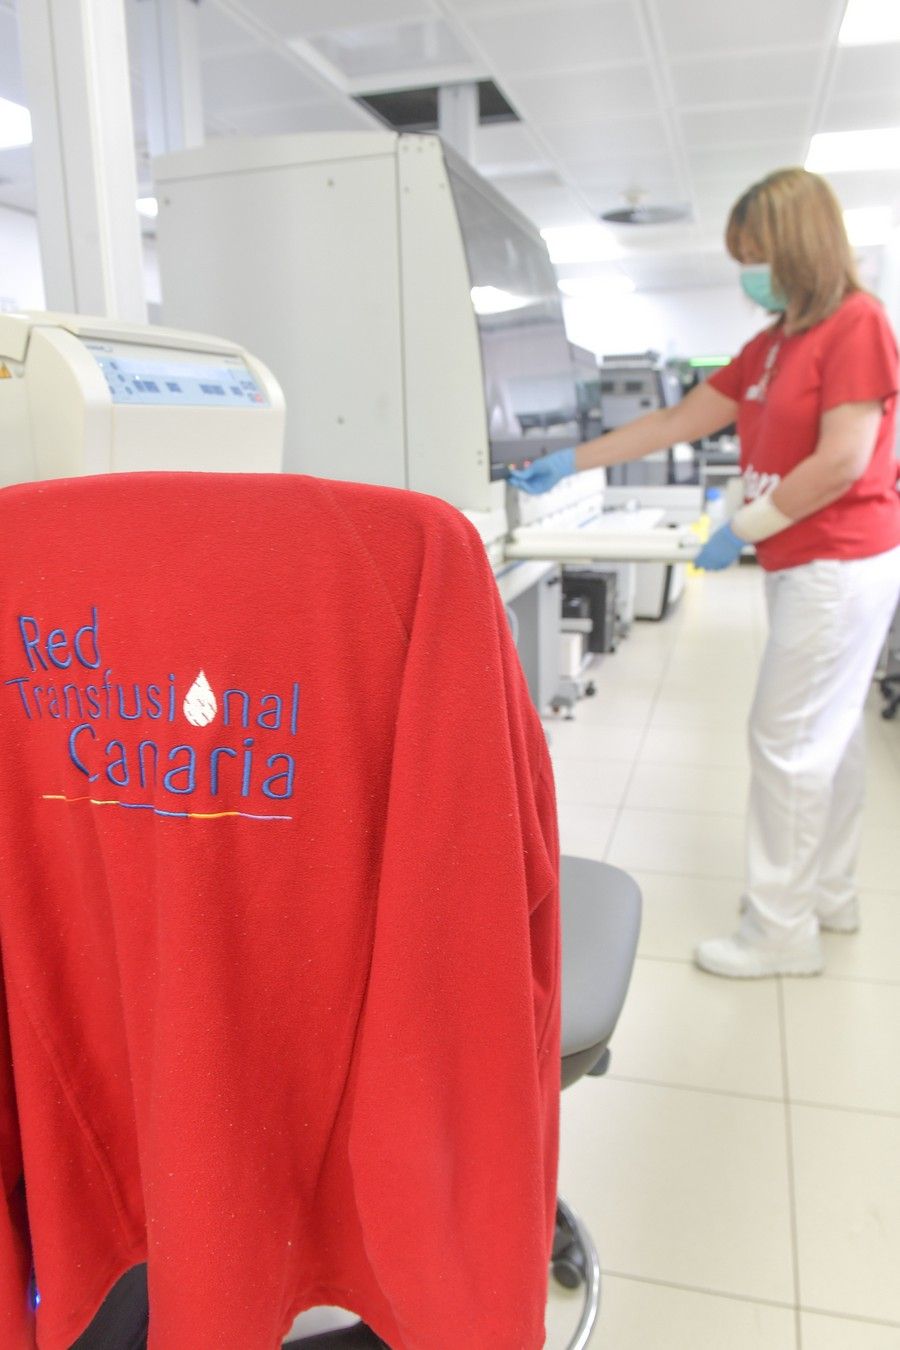 Almacenamiento de las donaciones de sangre en el ICHH